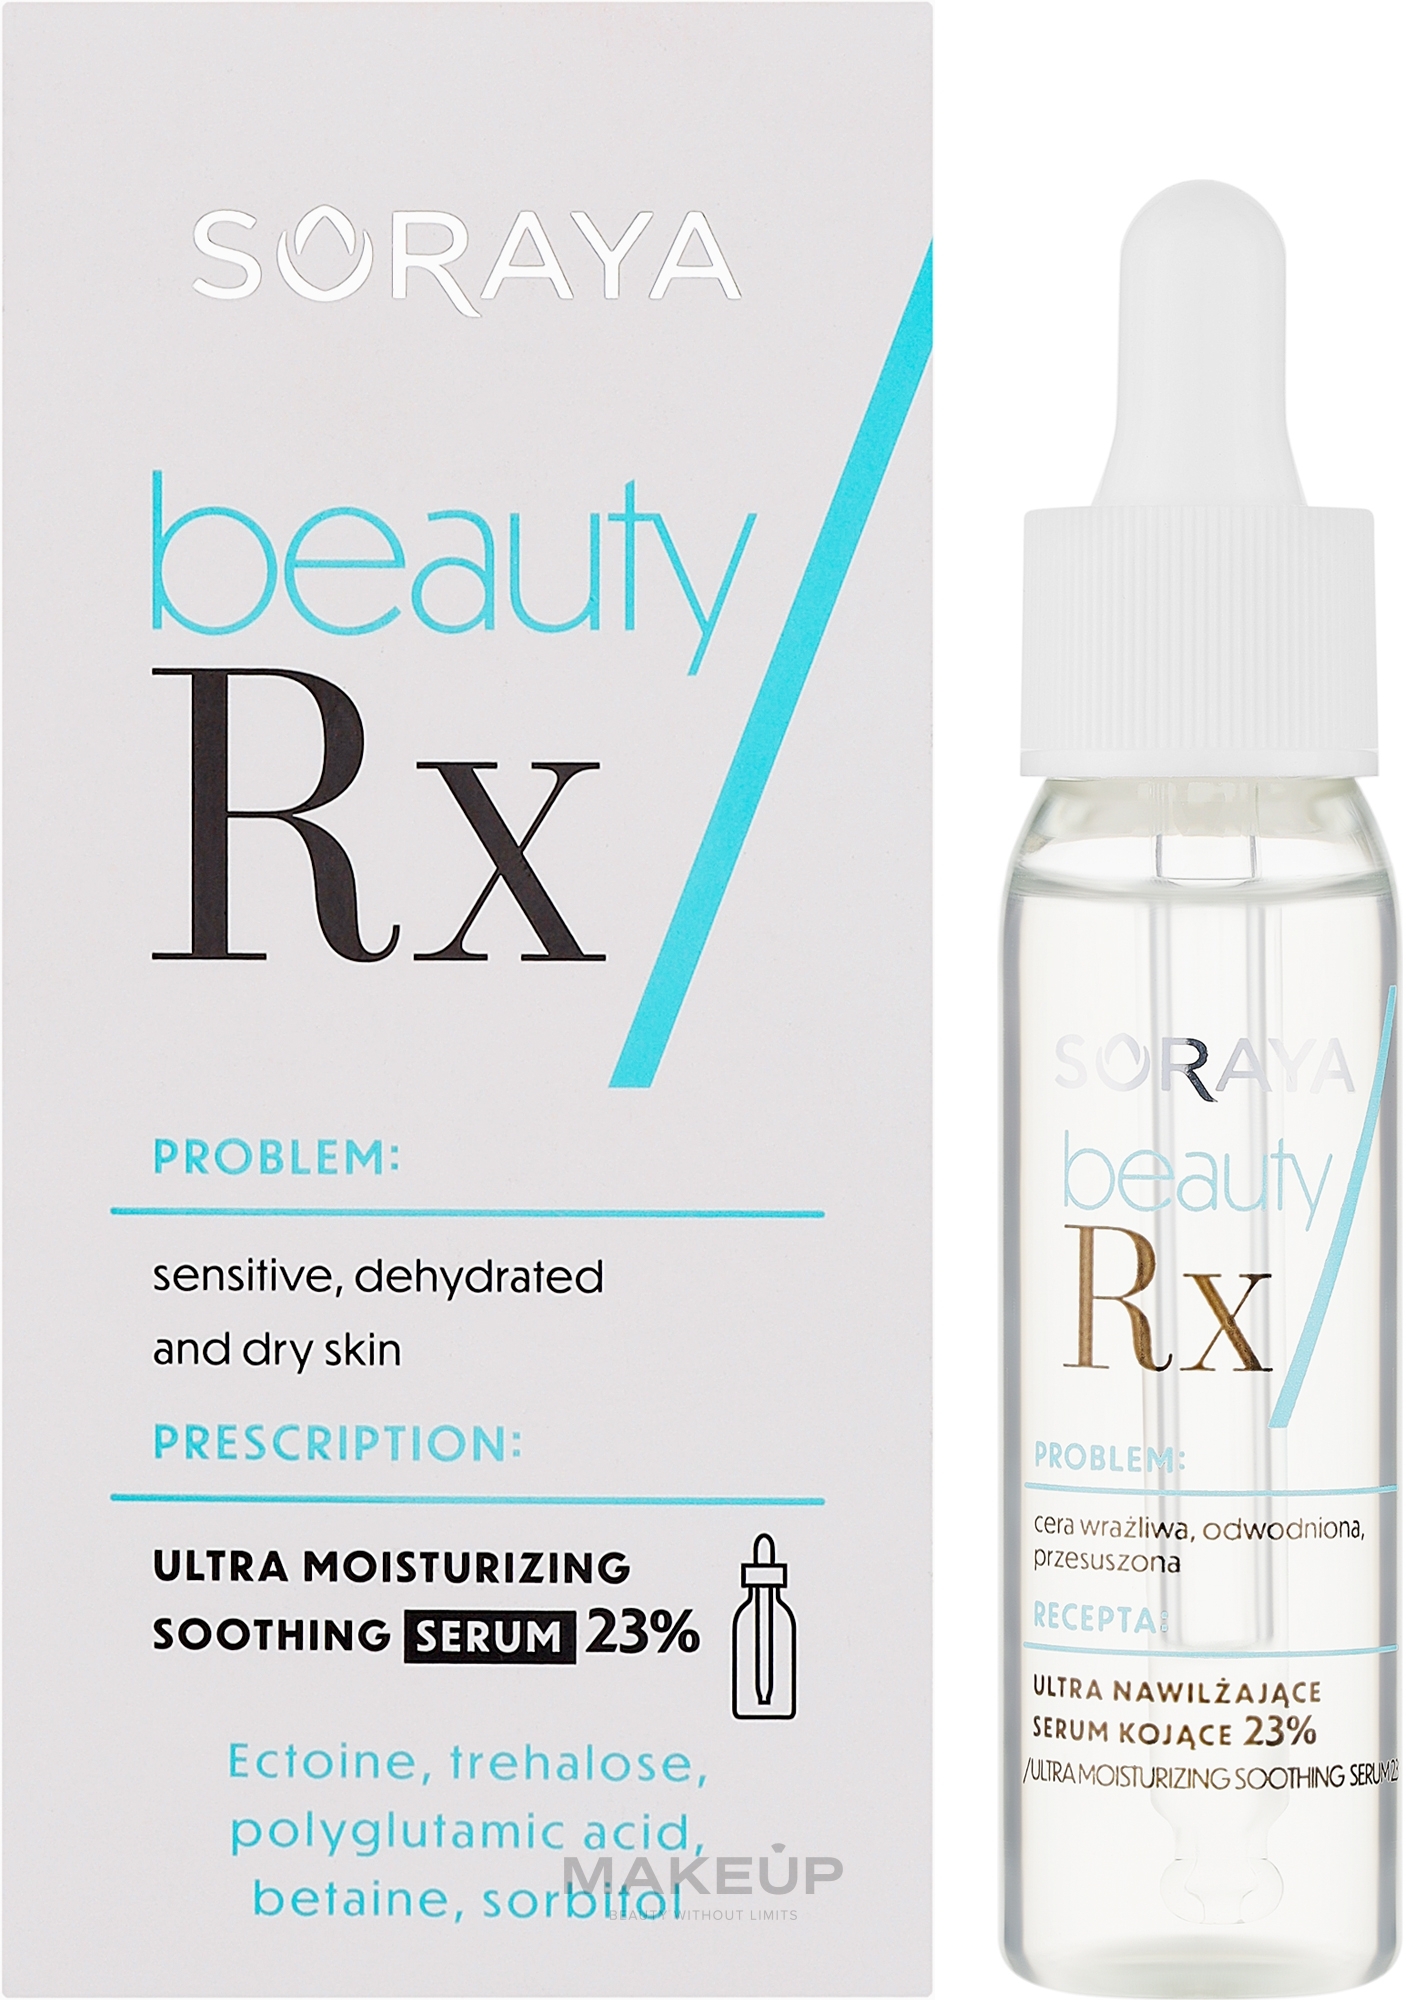 Ultranawilżające serum kojące 23% - Soraya Beauty Rx — Zdjęcie 30 ml